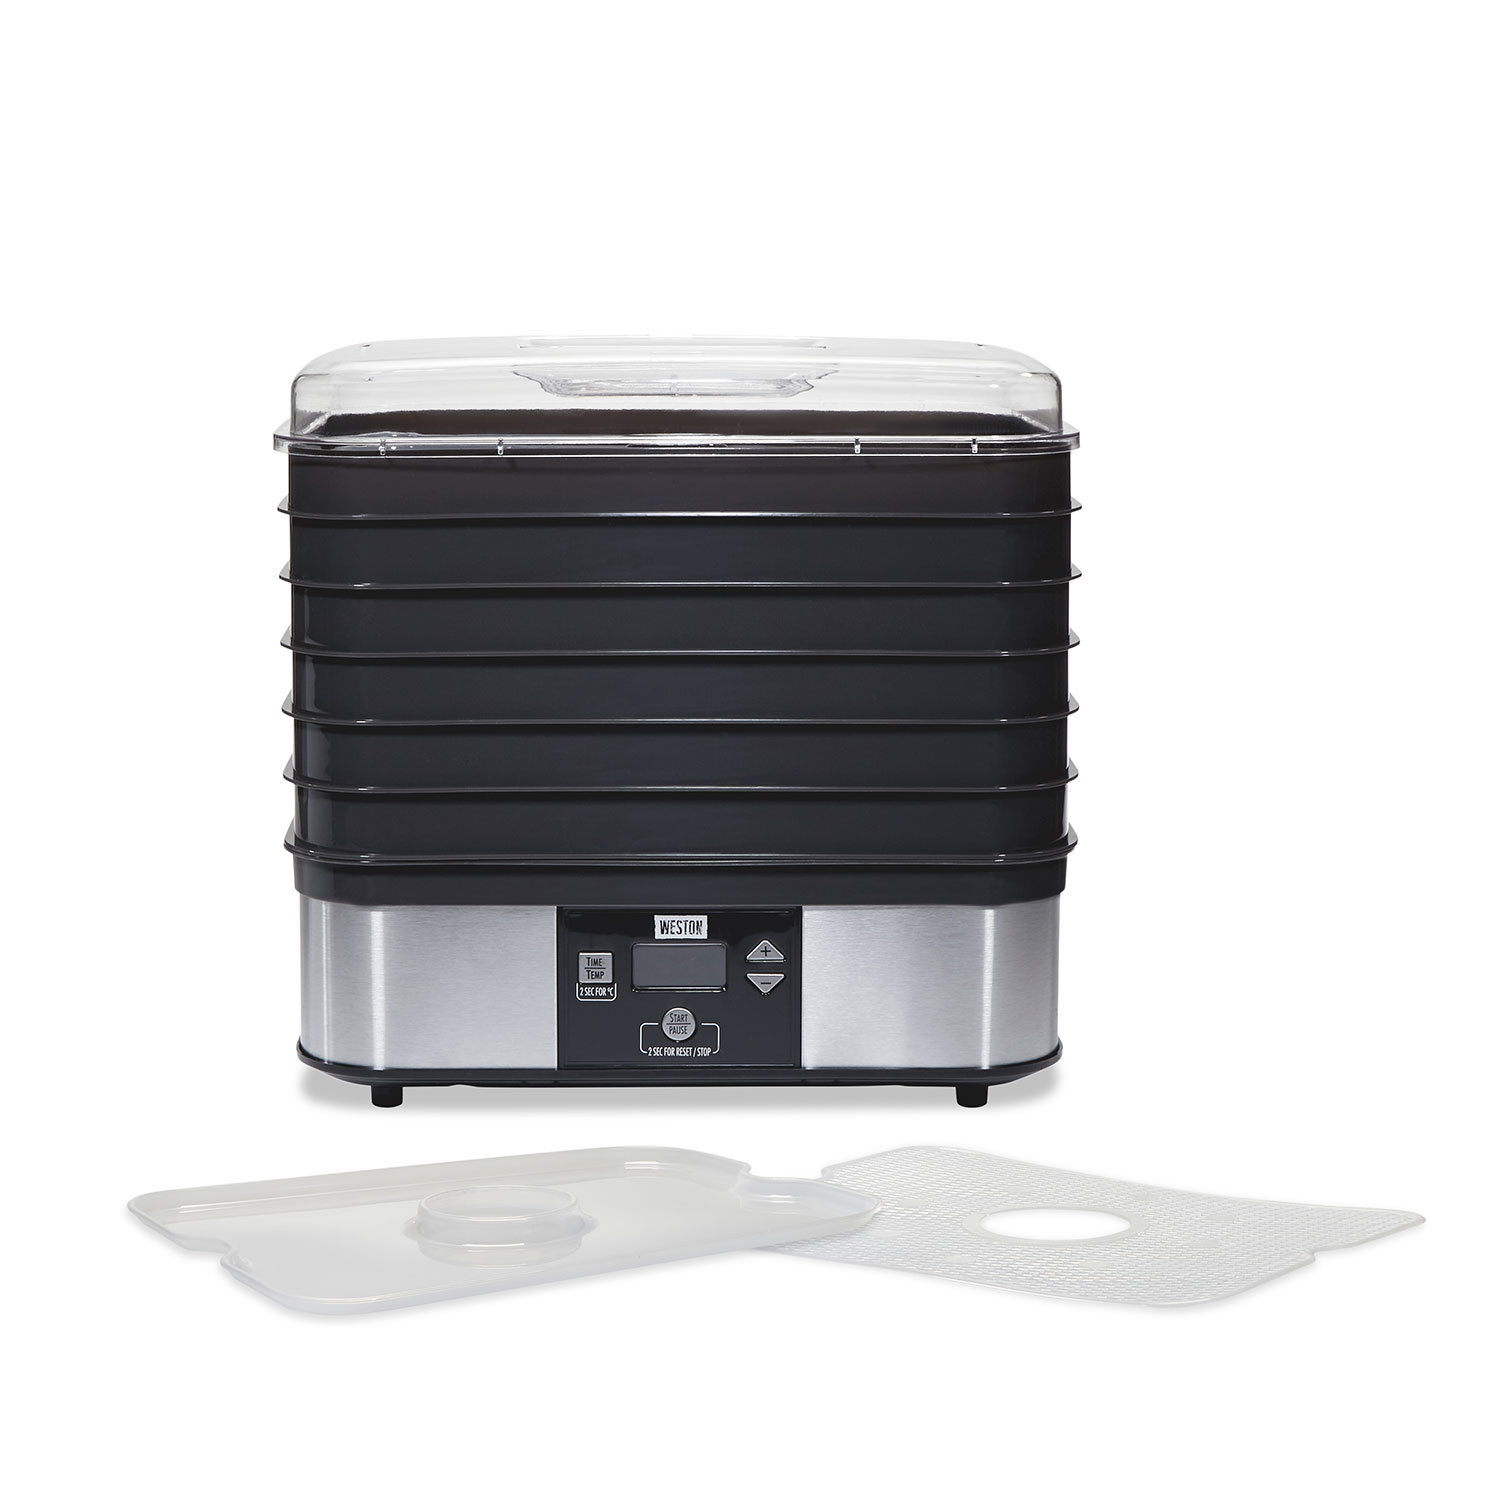 Weston® 6 Tray Digital Dehydrator (75-0401-W)